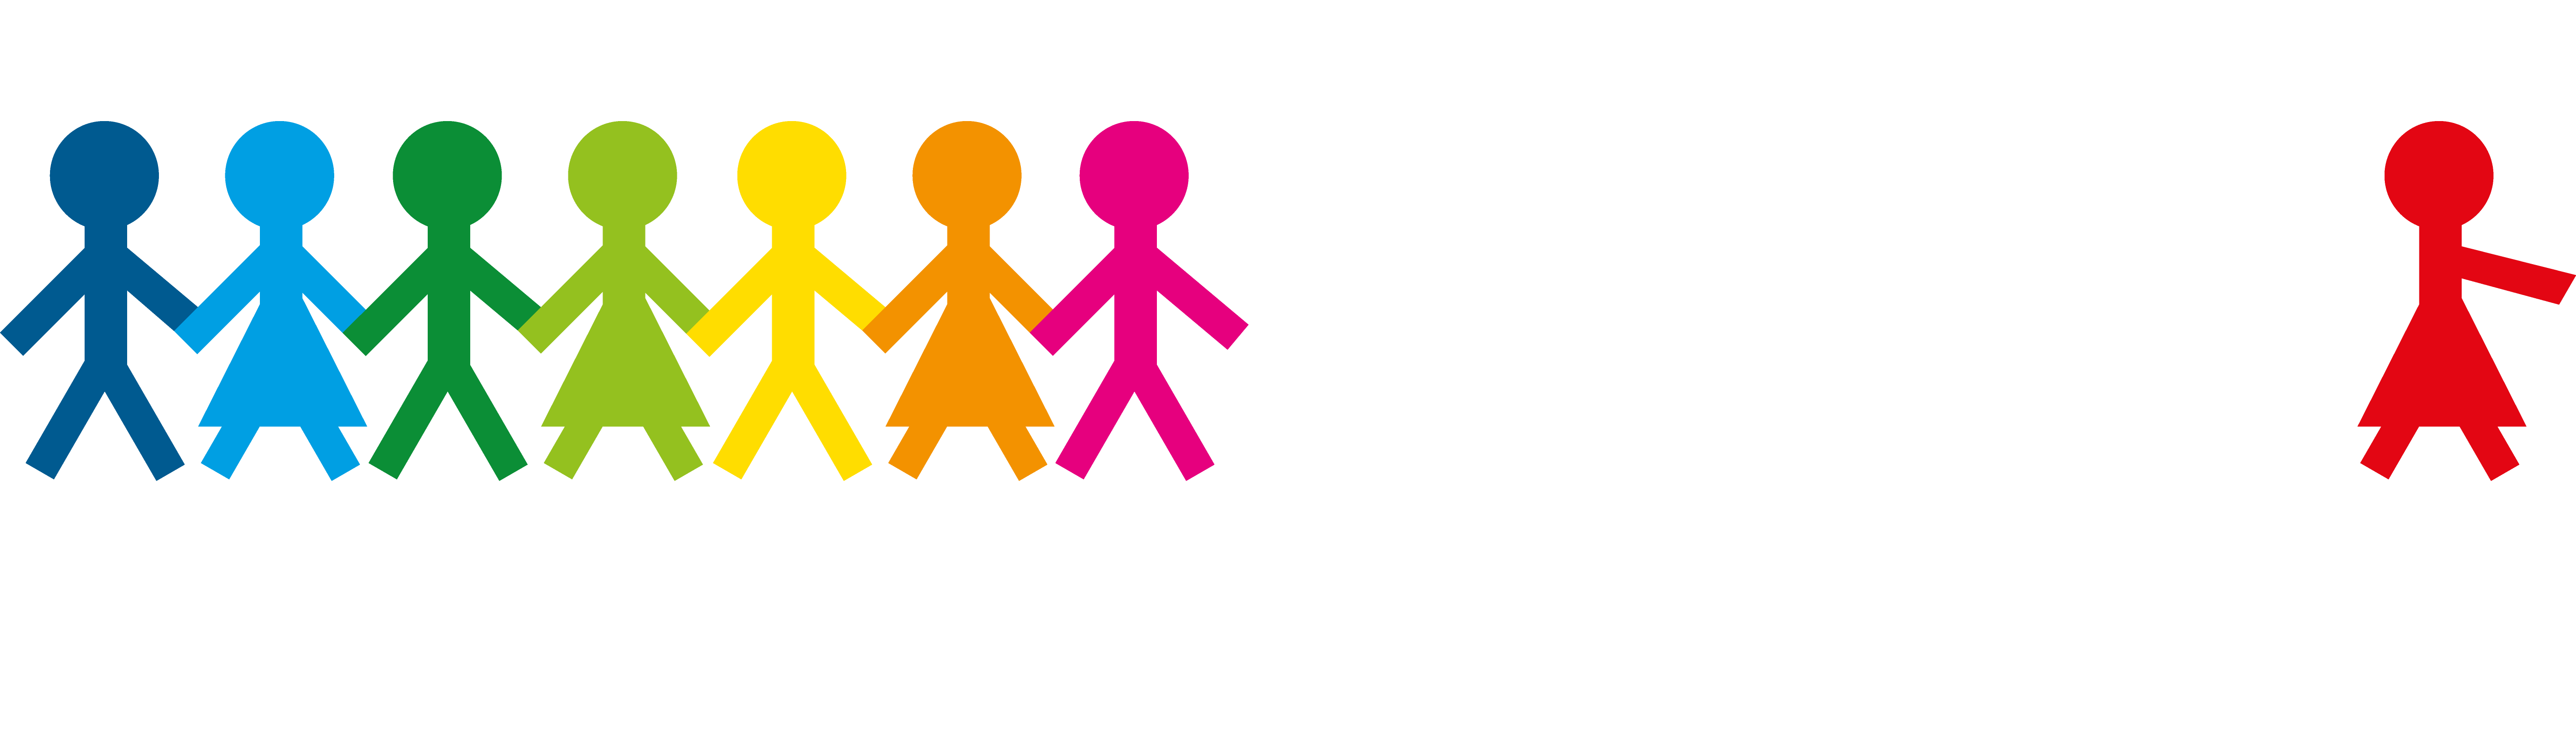 WRO CHILE